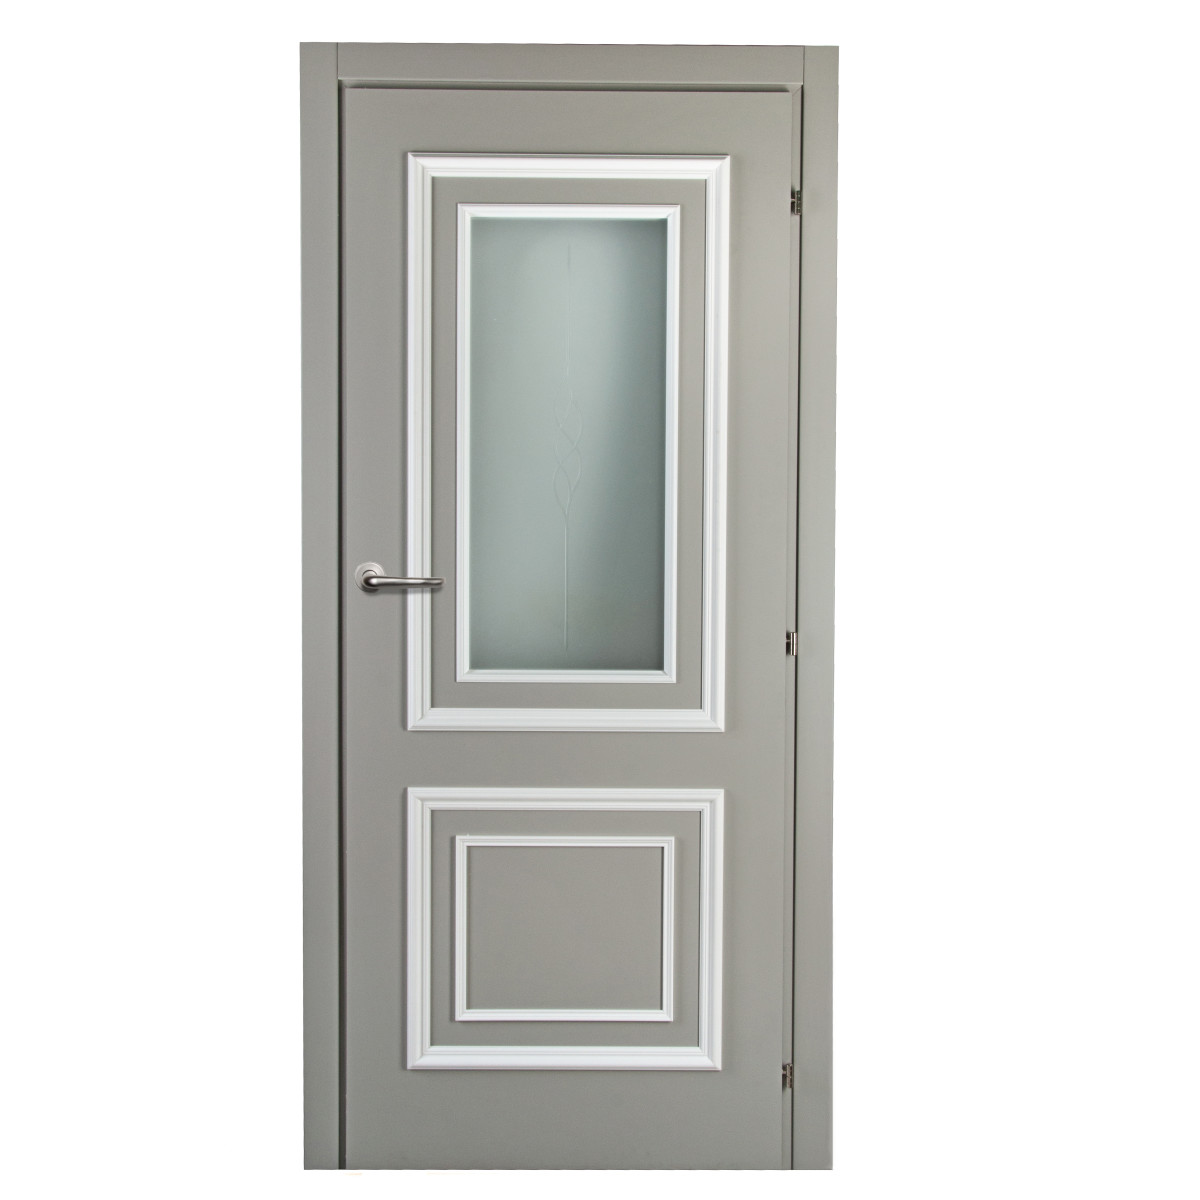 Дверь межкомнатная Треви 70х200 см, цвет серый, с фурнитурой